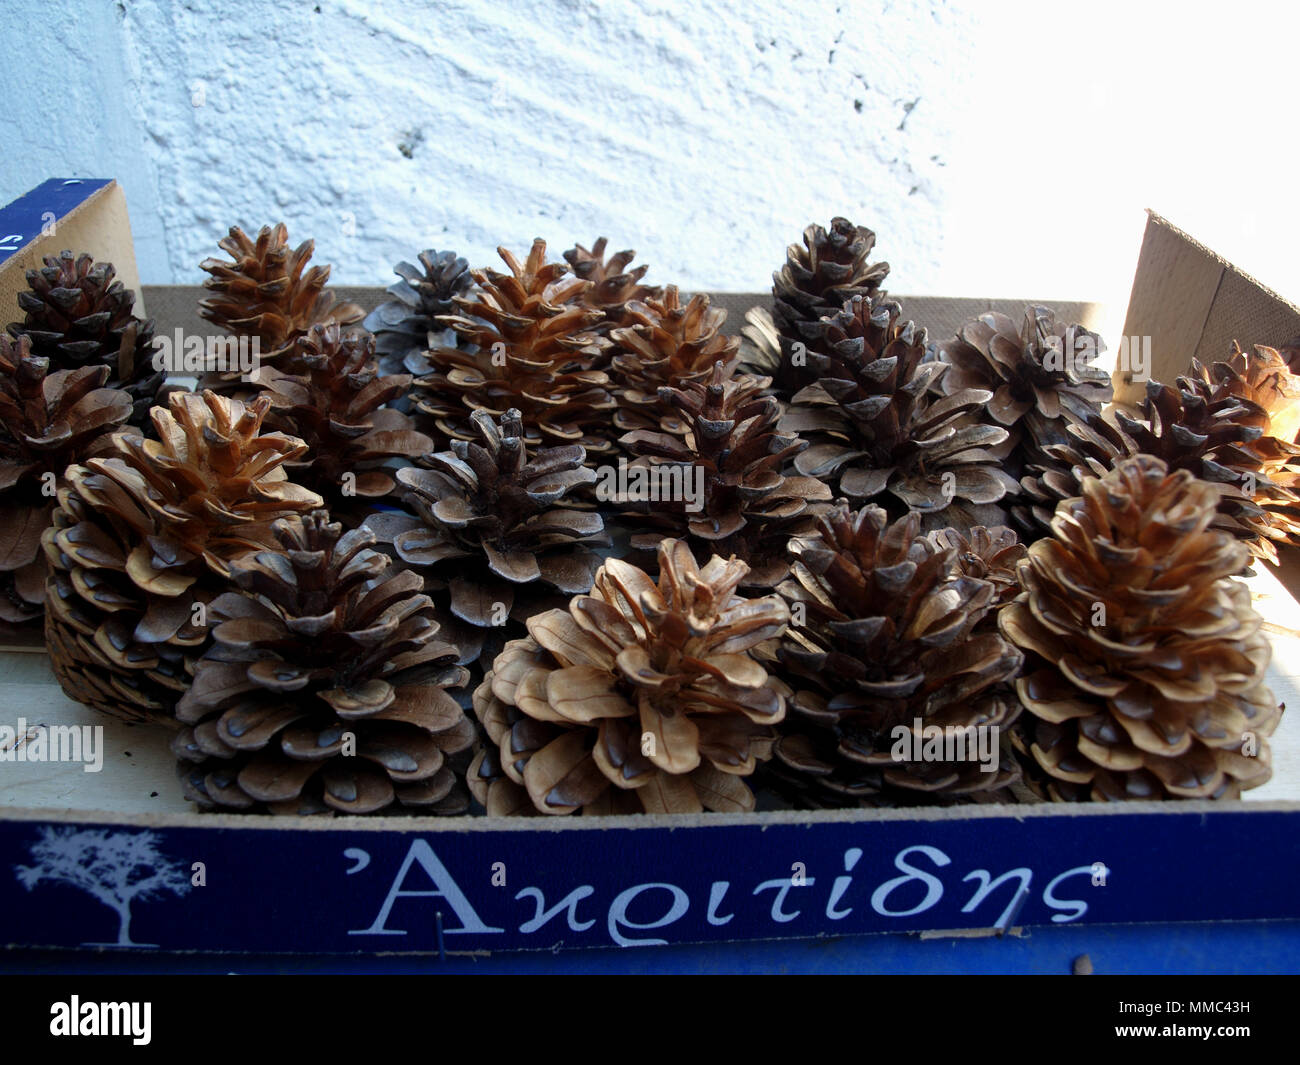 Tray of pine cones Stock Photo